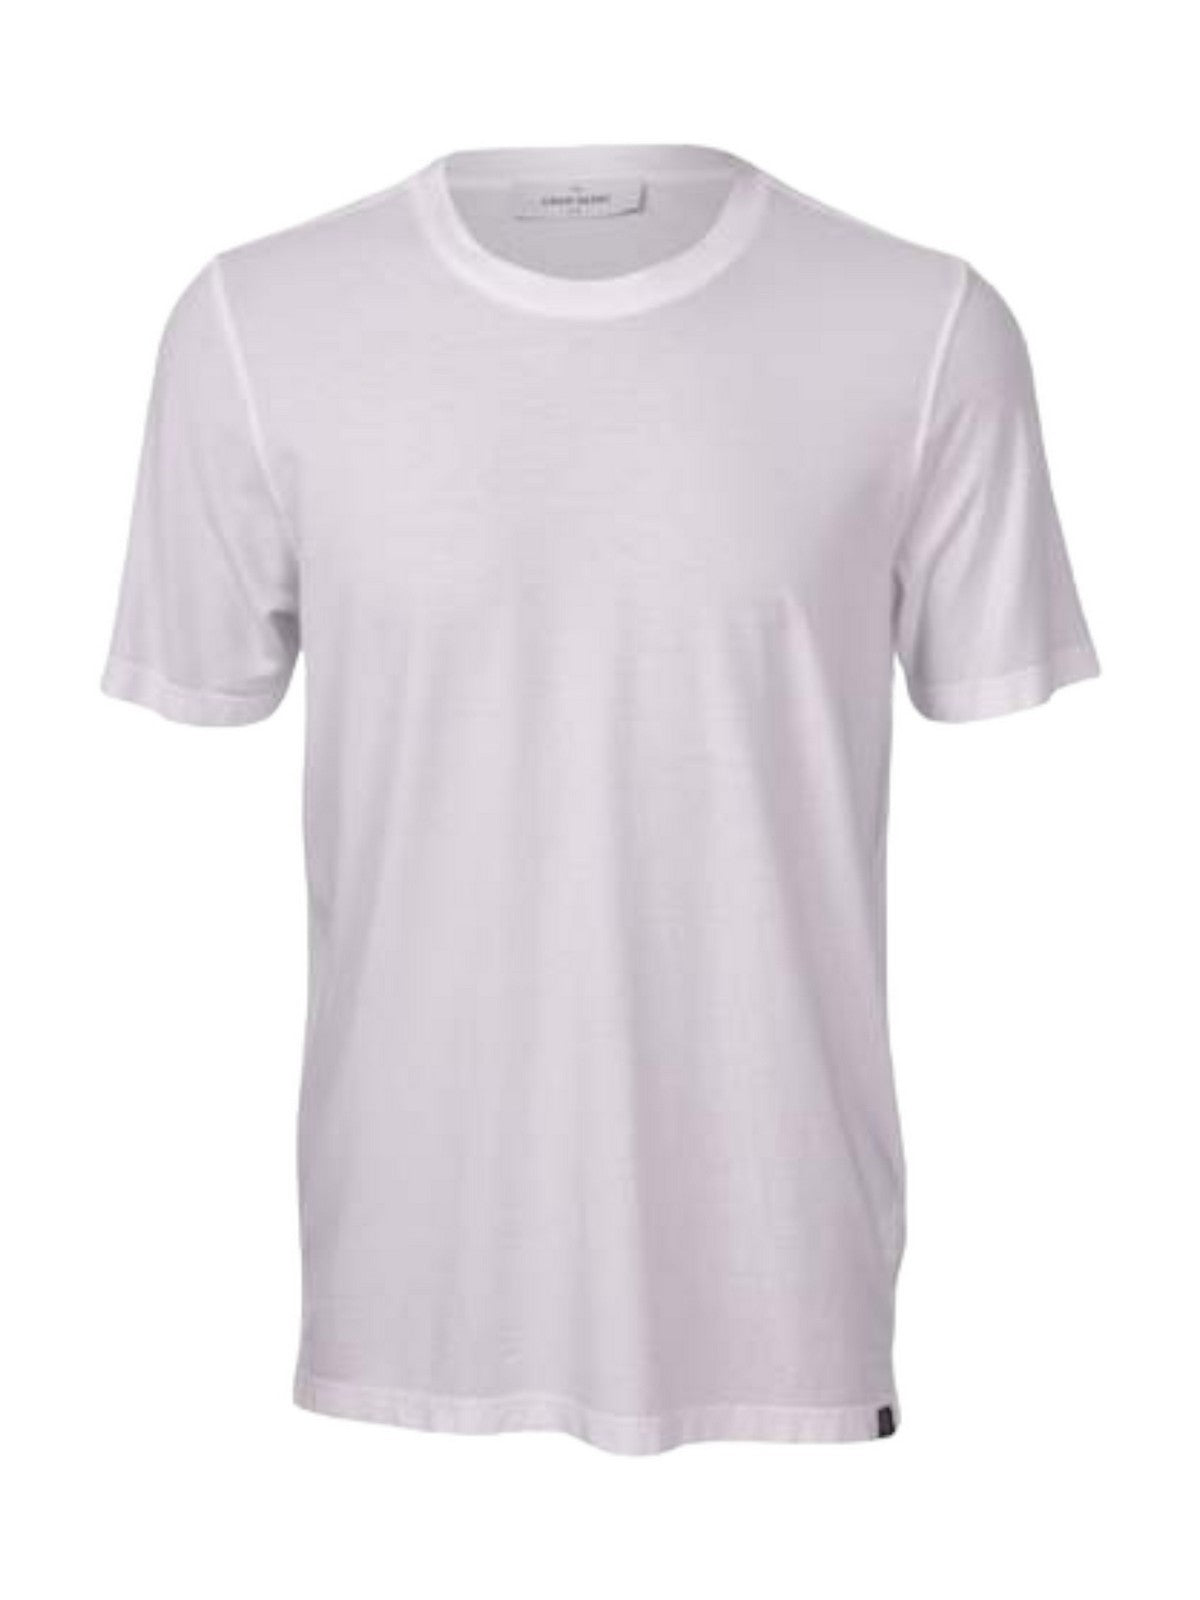 GRAN SASSO T-Shirt e Polo Uomo  60136/81401 815 Bianco